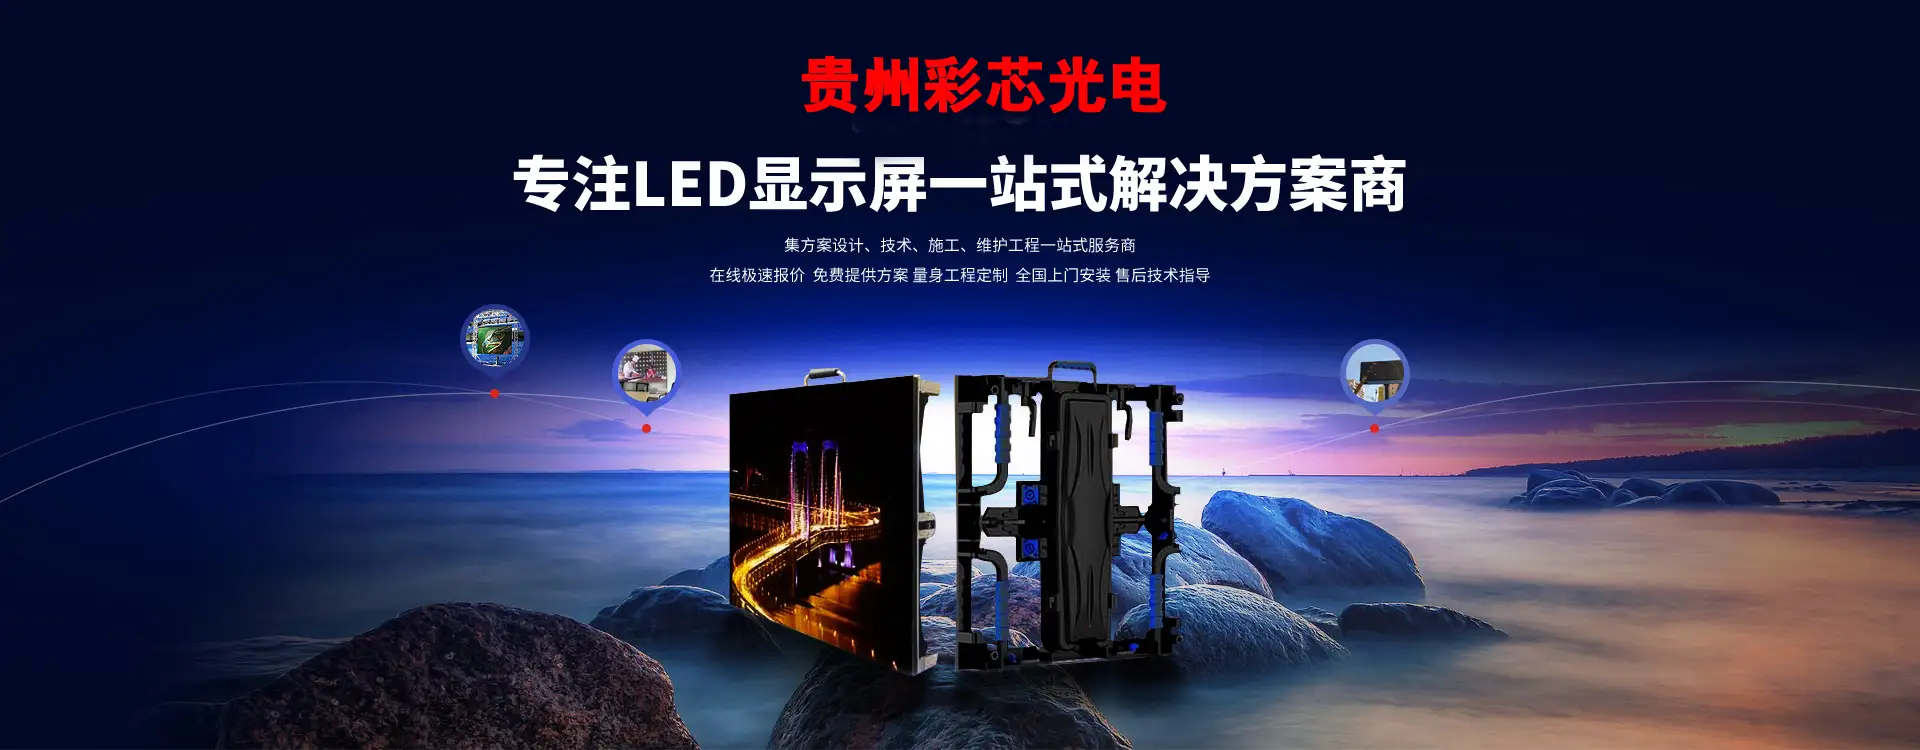 贵州彩新LED显示屏安装有限公司